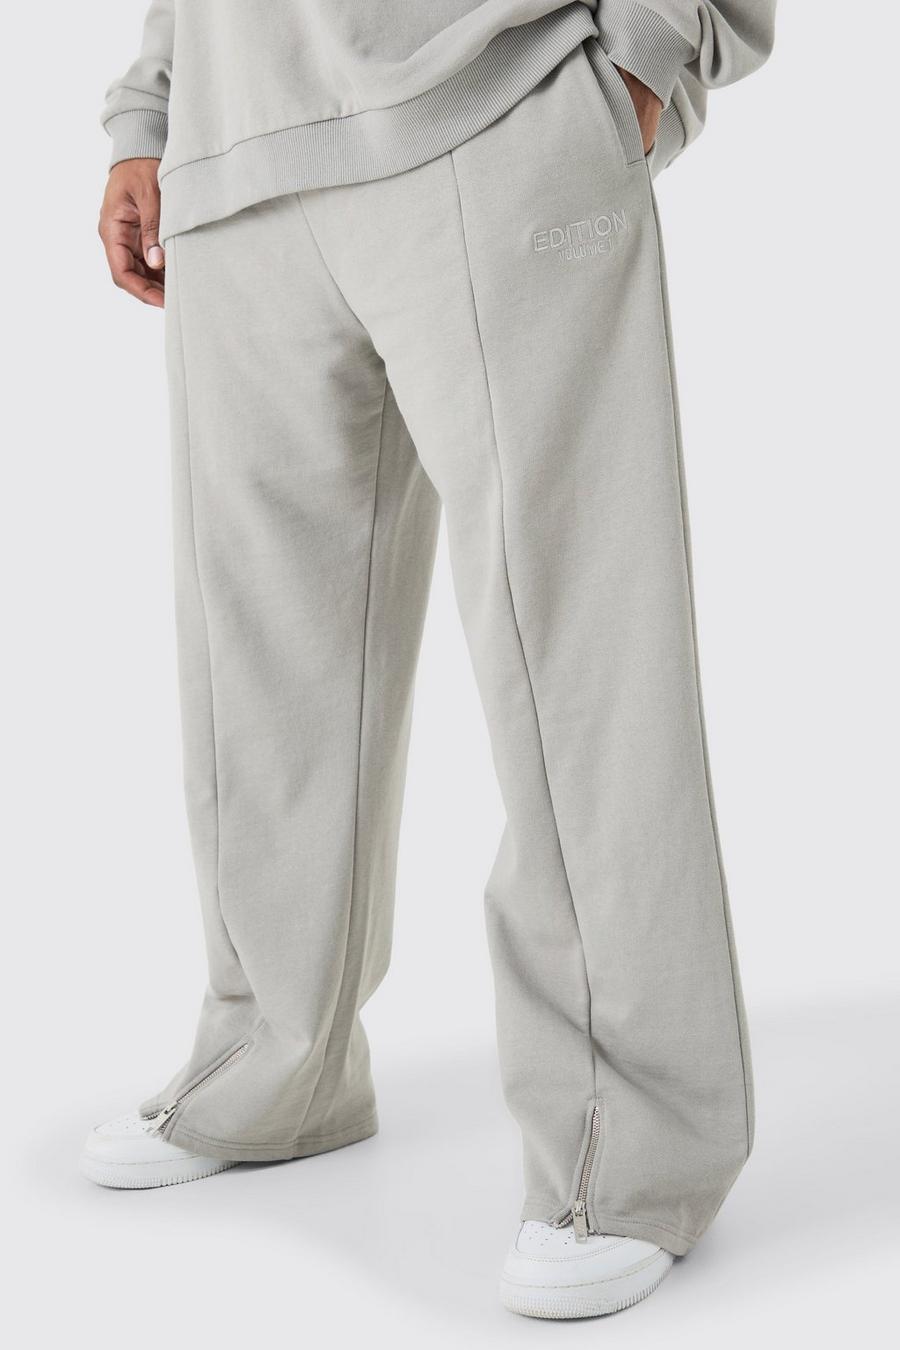 Pantaloni tuta pesanti Plus Size EDITION rilassati con spacco sul fondo, Grey